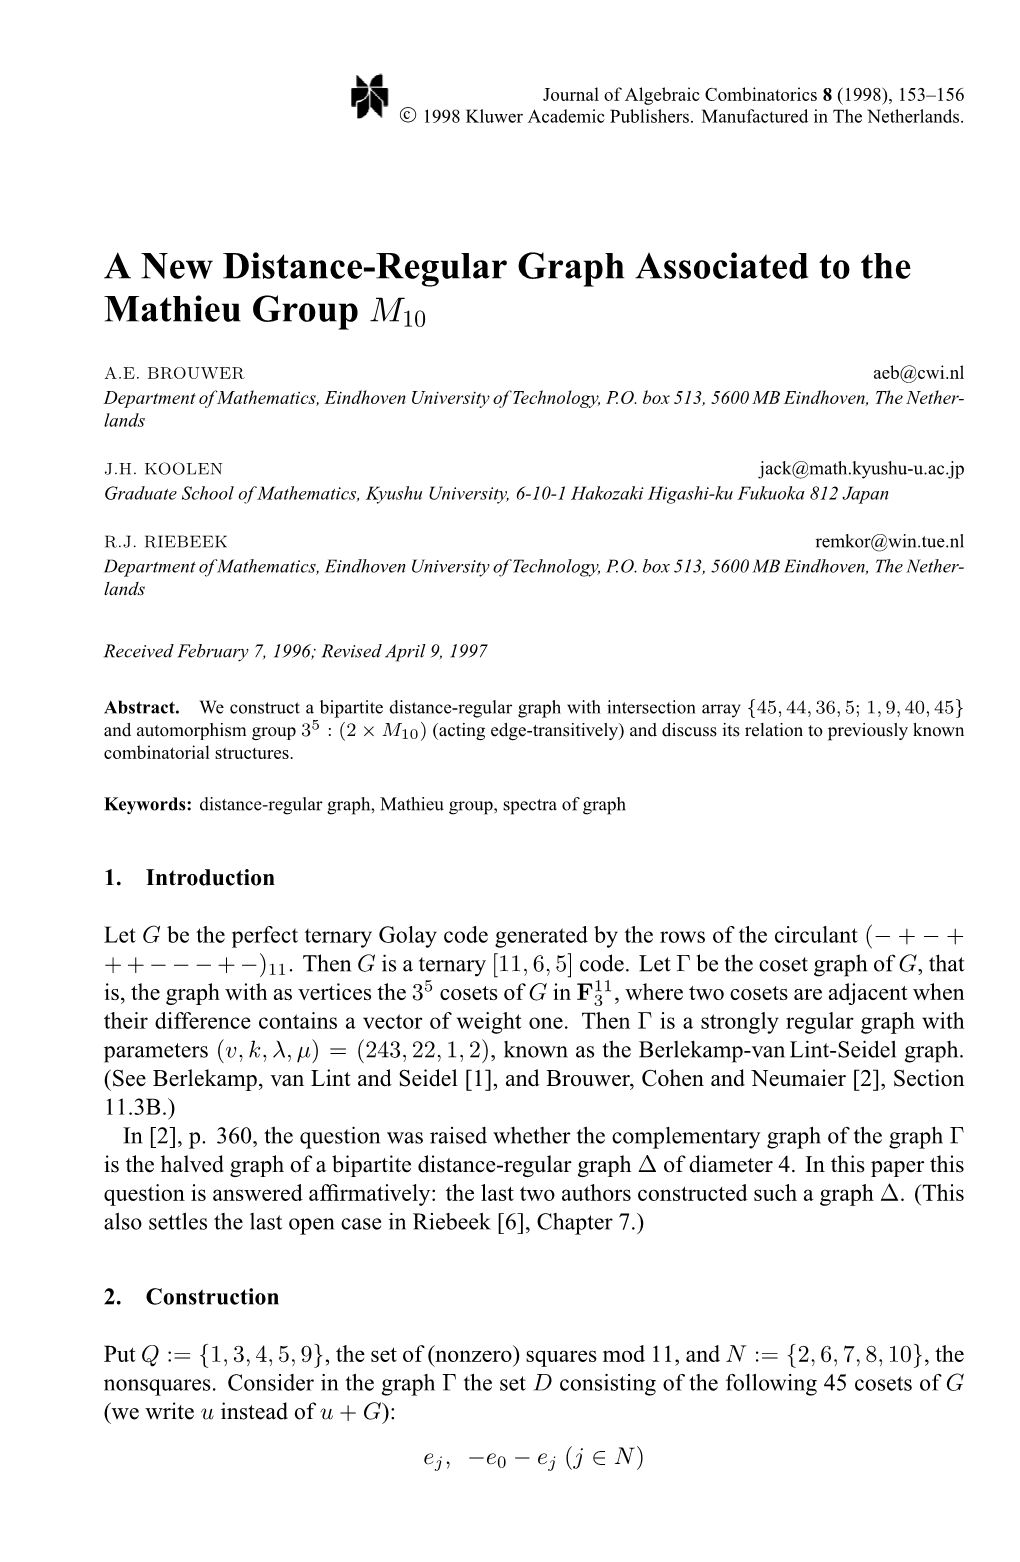 A New Distance-Regular Graph Associated to the Mathieu Group M10